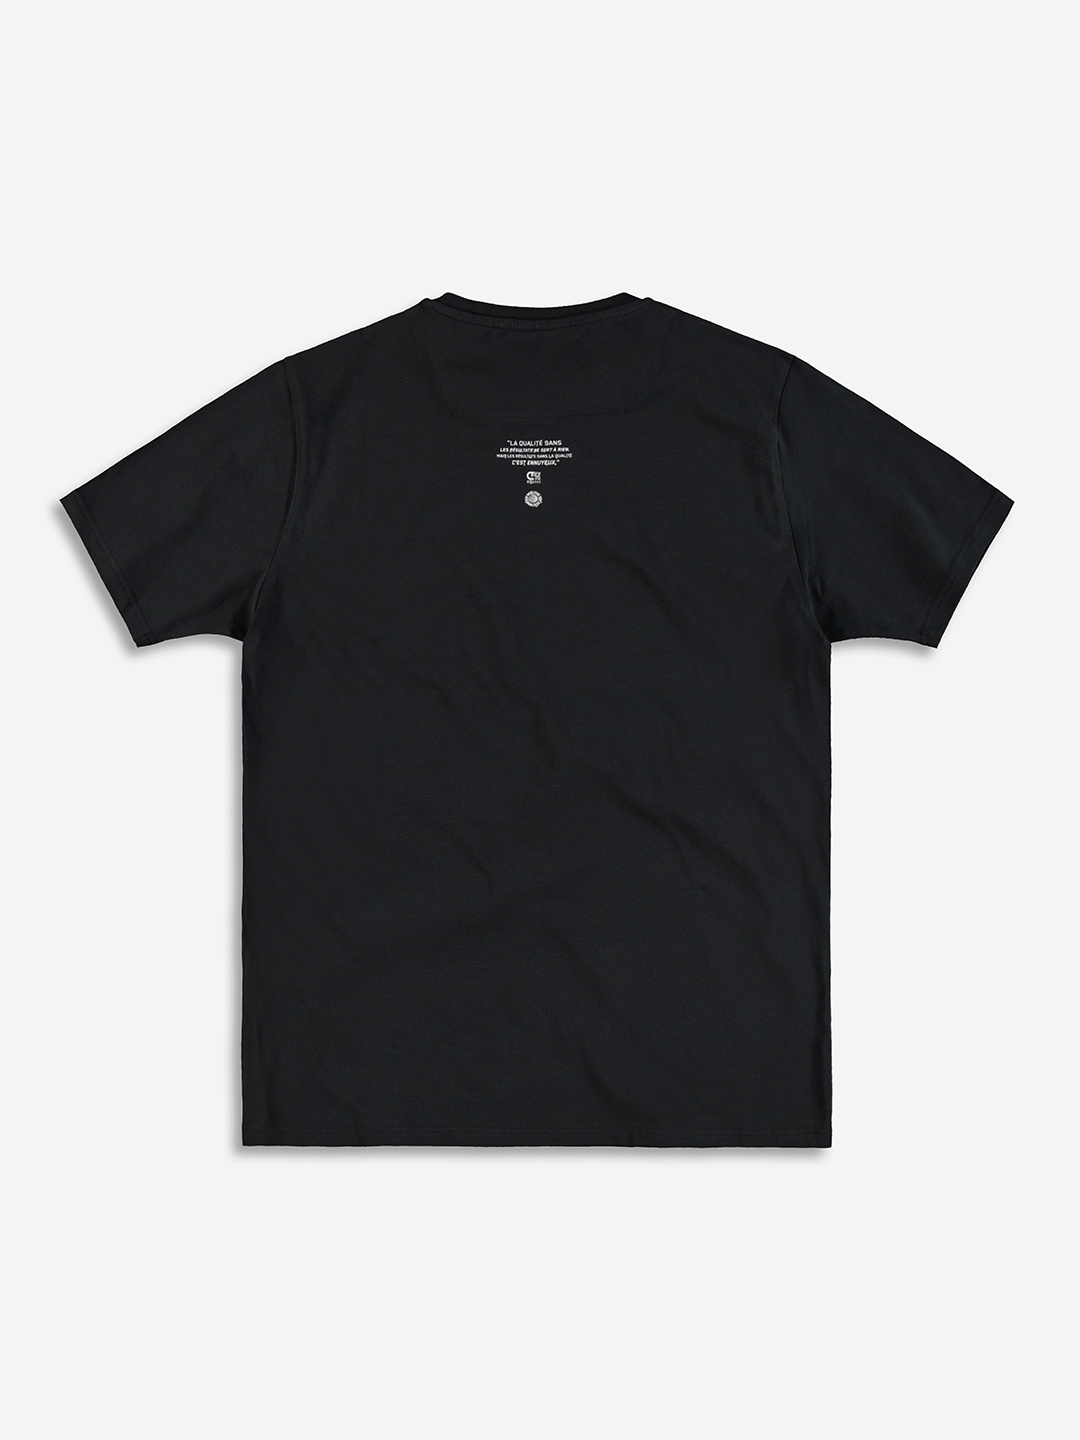 BANLIEUE | Banlieue x Cruyff T-shirt Black - Clan de Banlieue